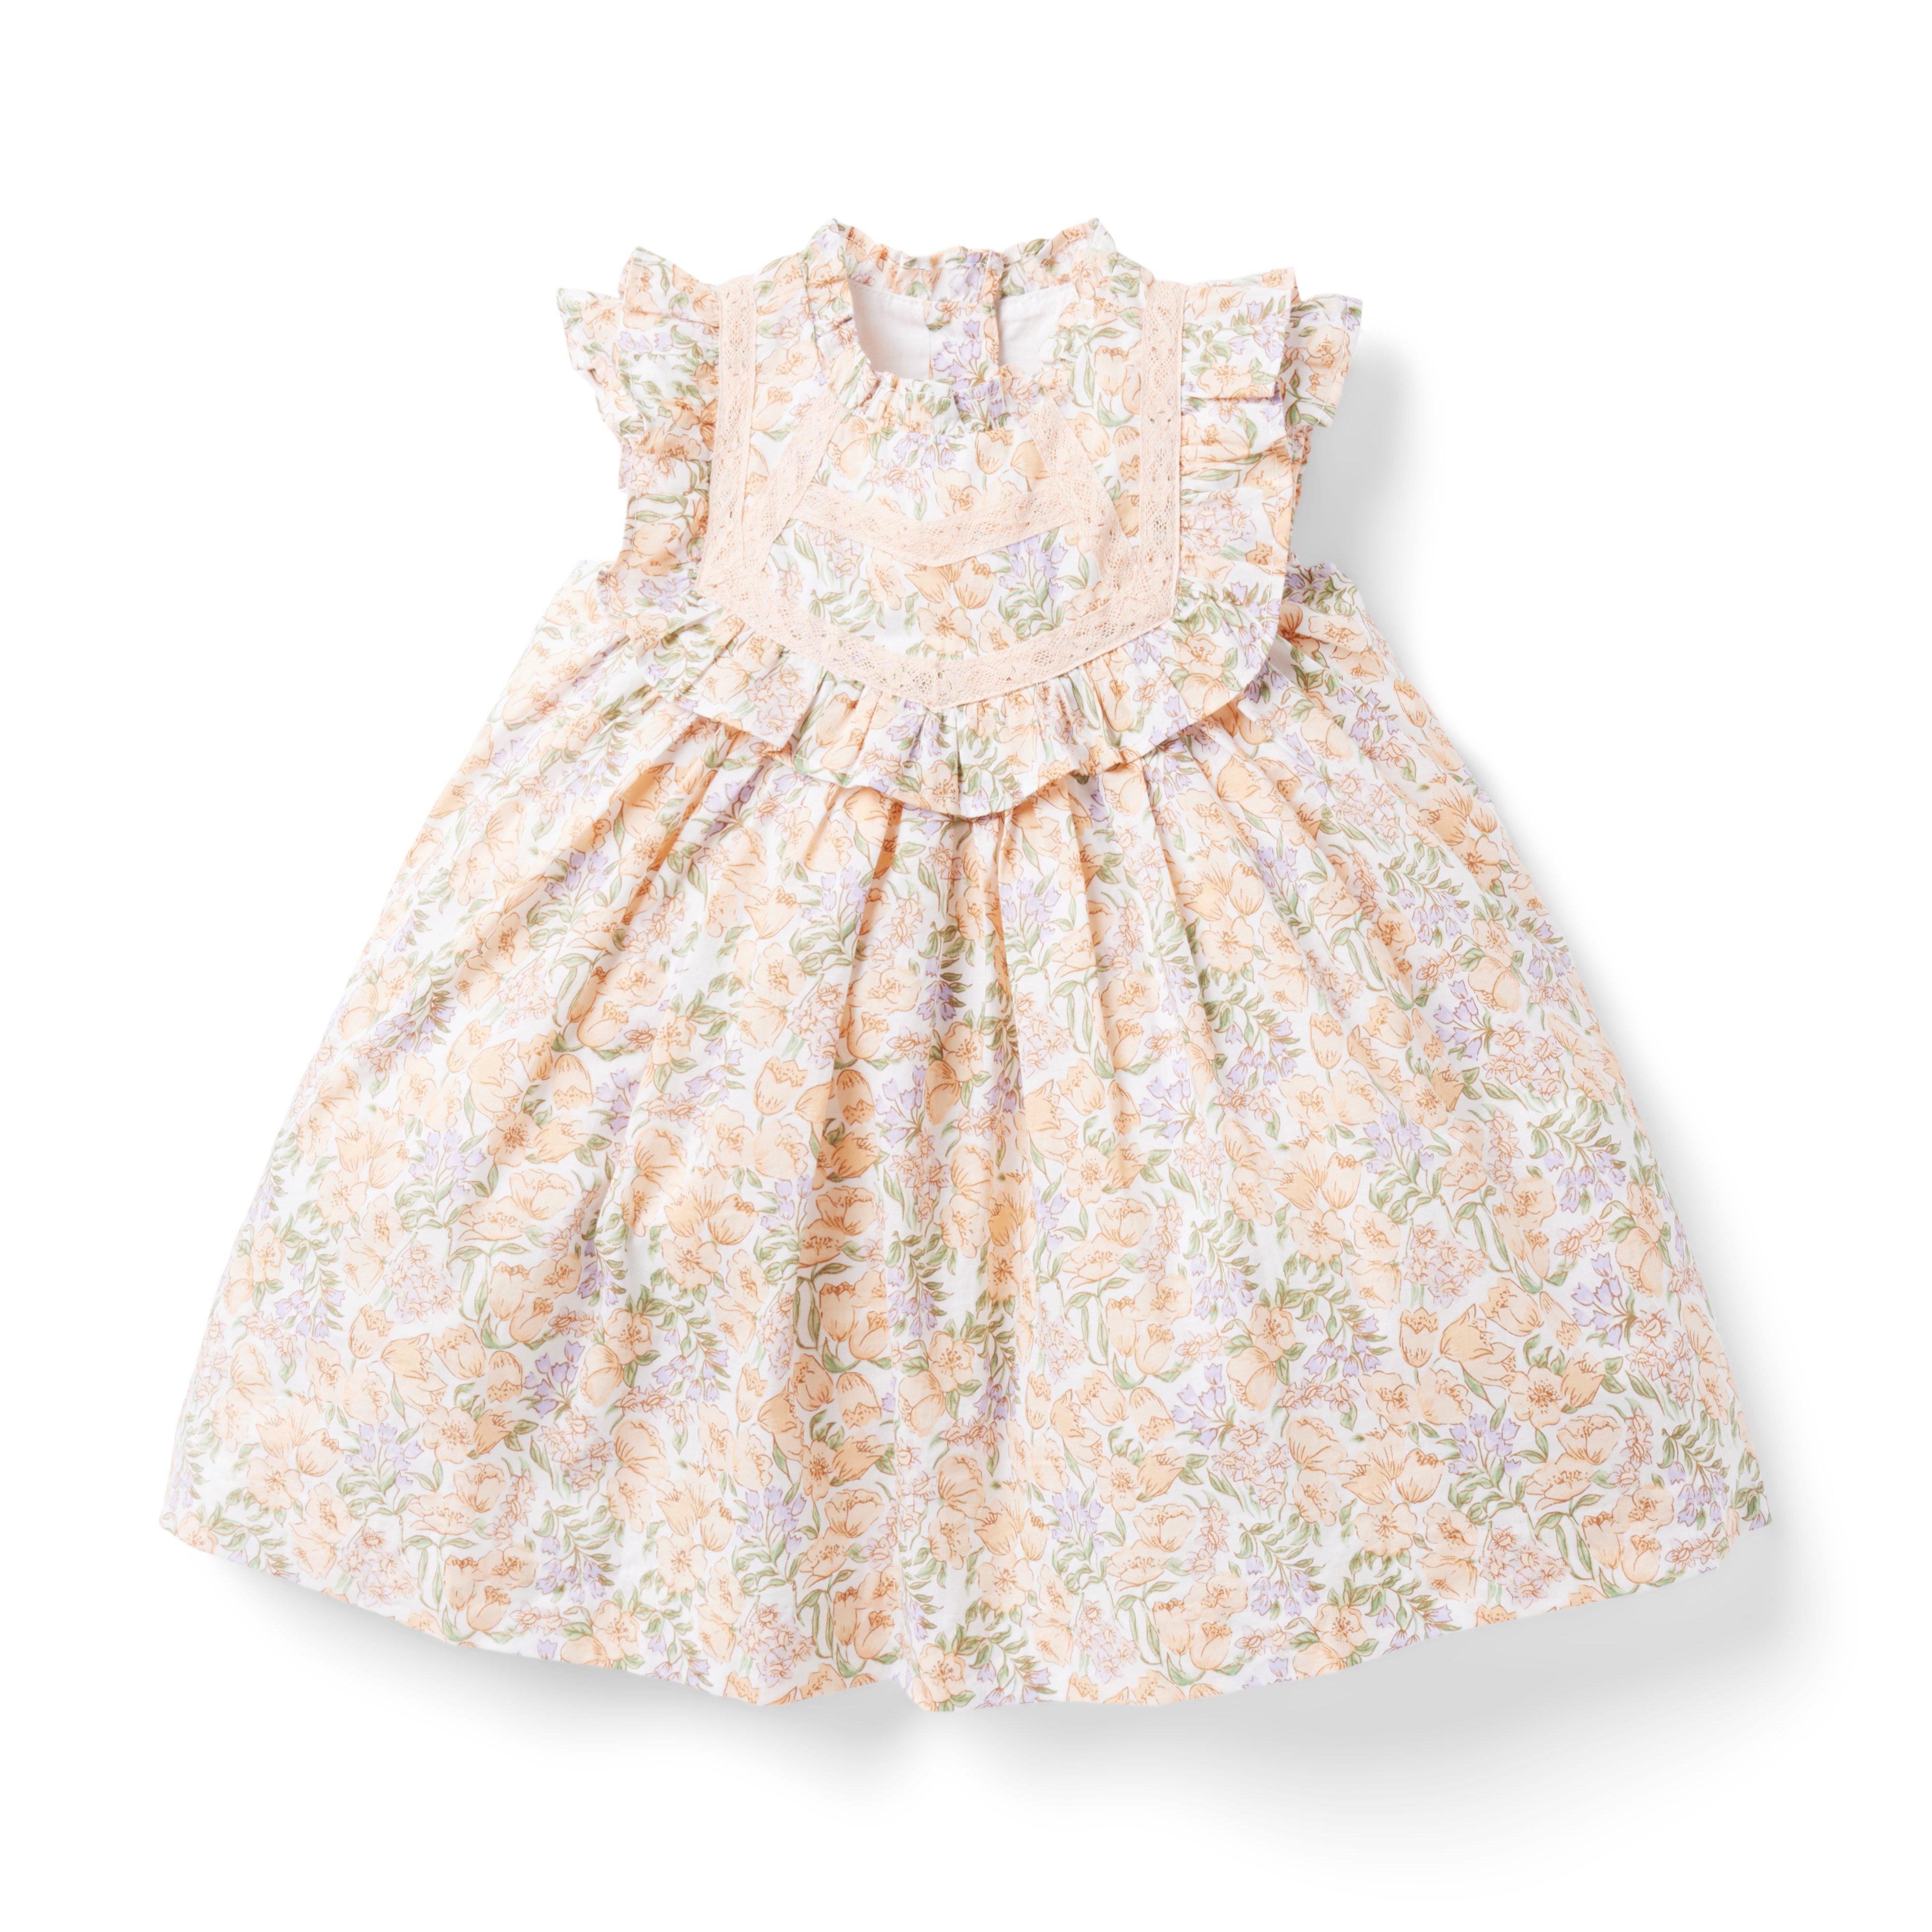 The Little Garden Baby Dress